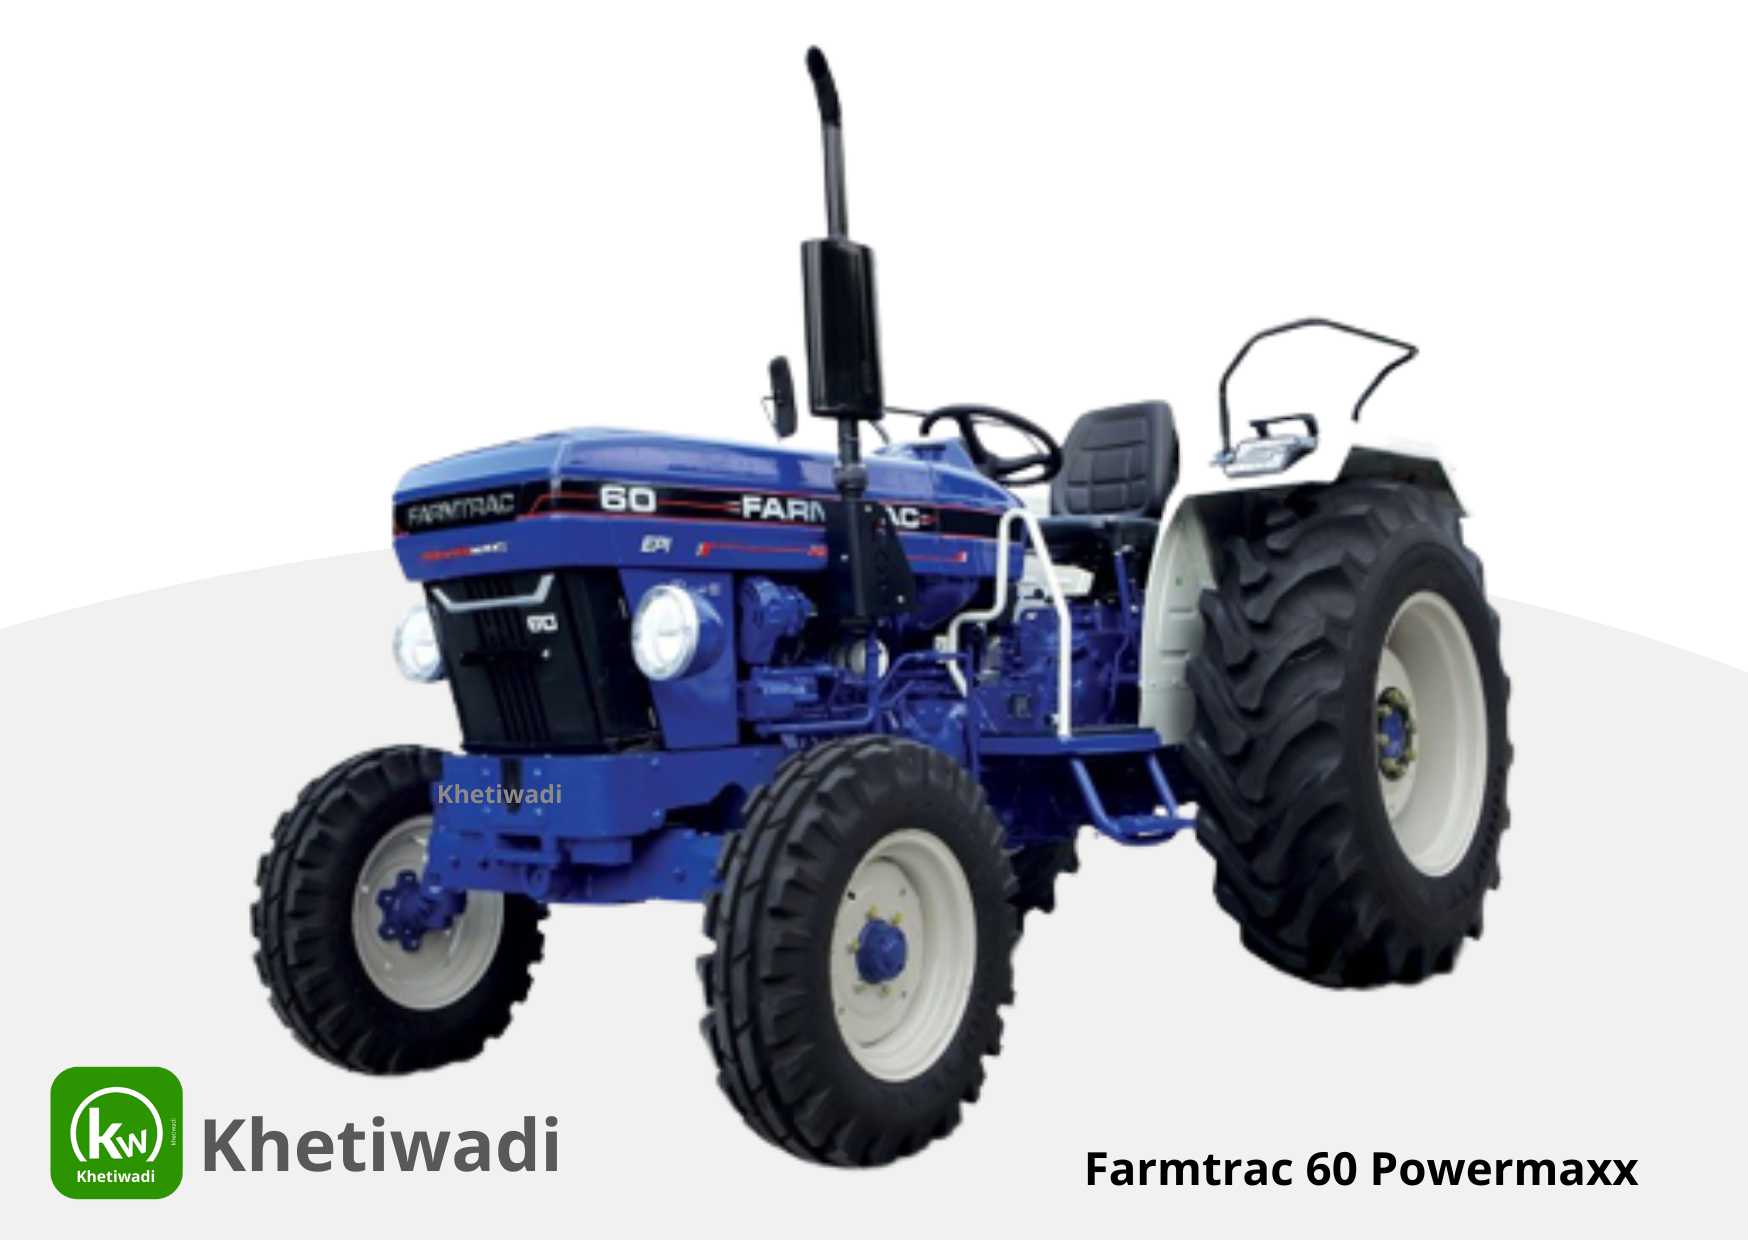 Farmtrac 60 Powermaxx full detail